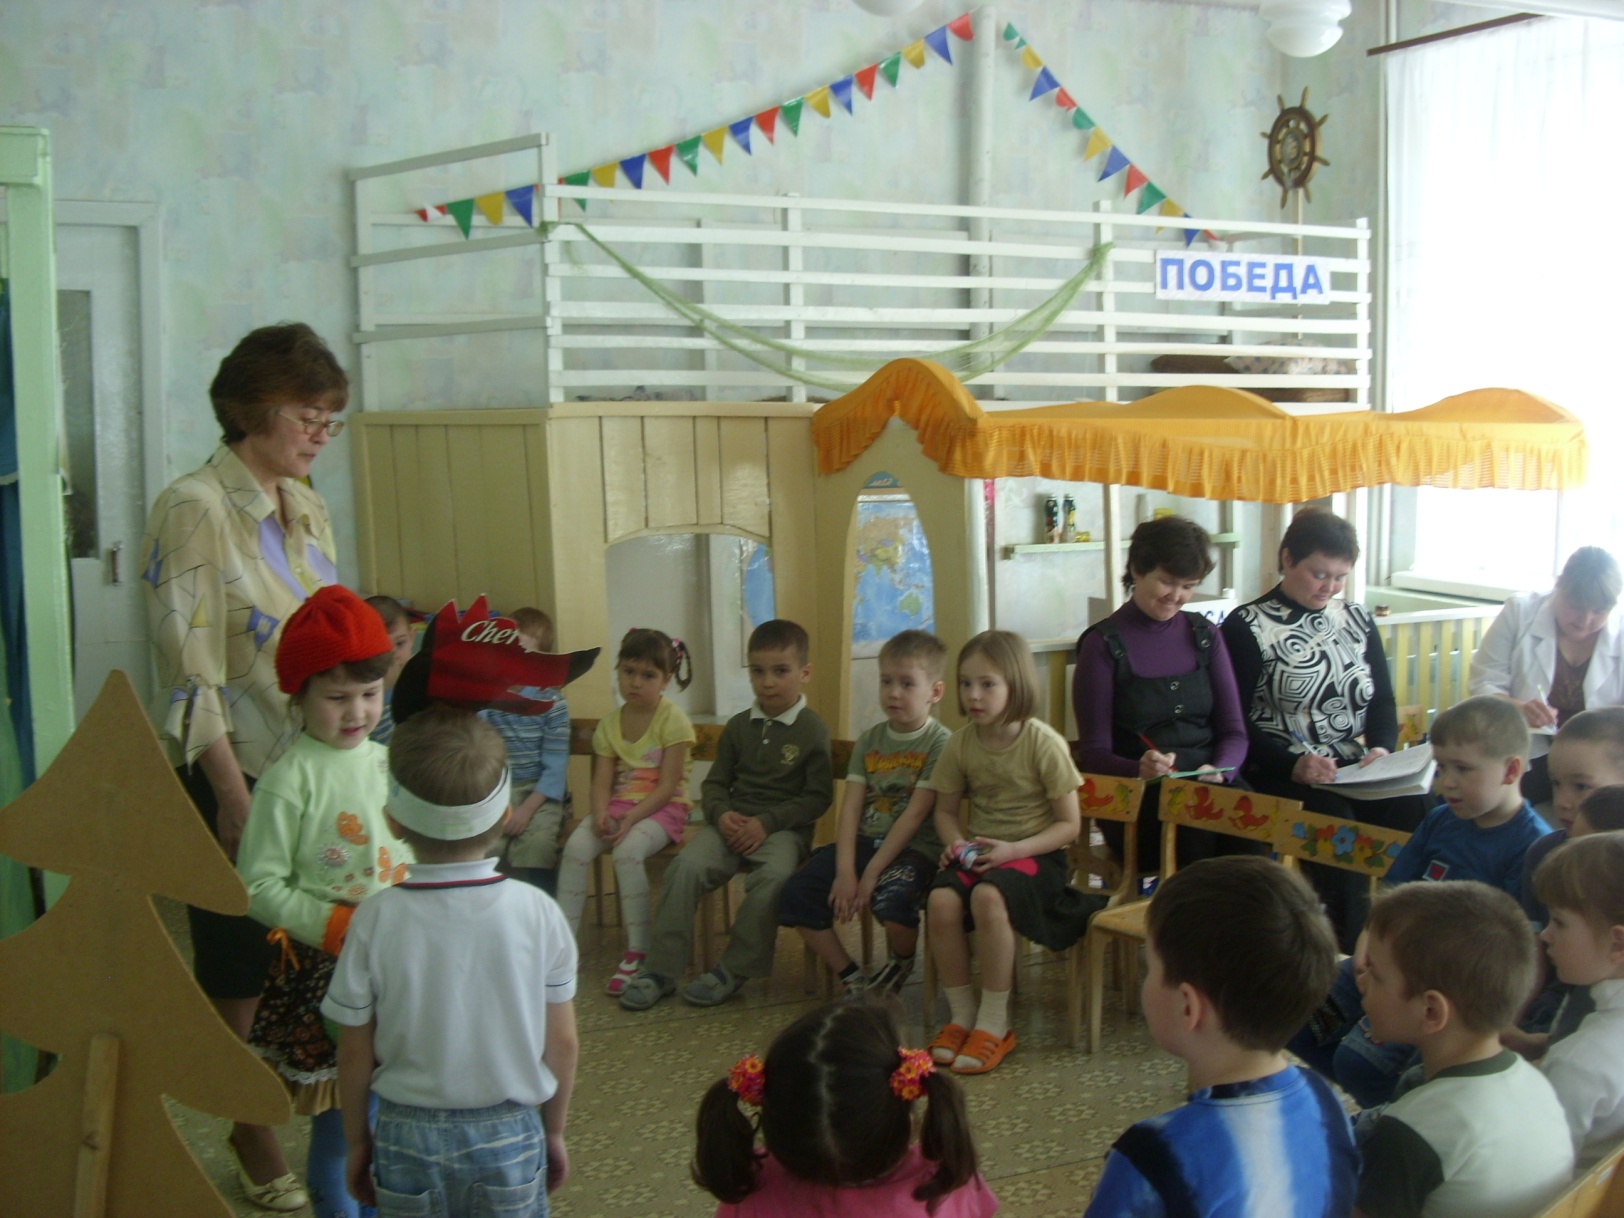 Путешествие Колобка по реке Знаний игра -путешествие по развитию речи с детьми второй младшей группы в соответствии с ФГОС ДО.